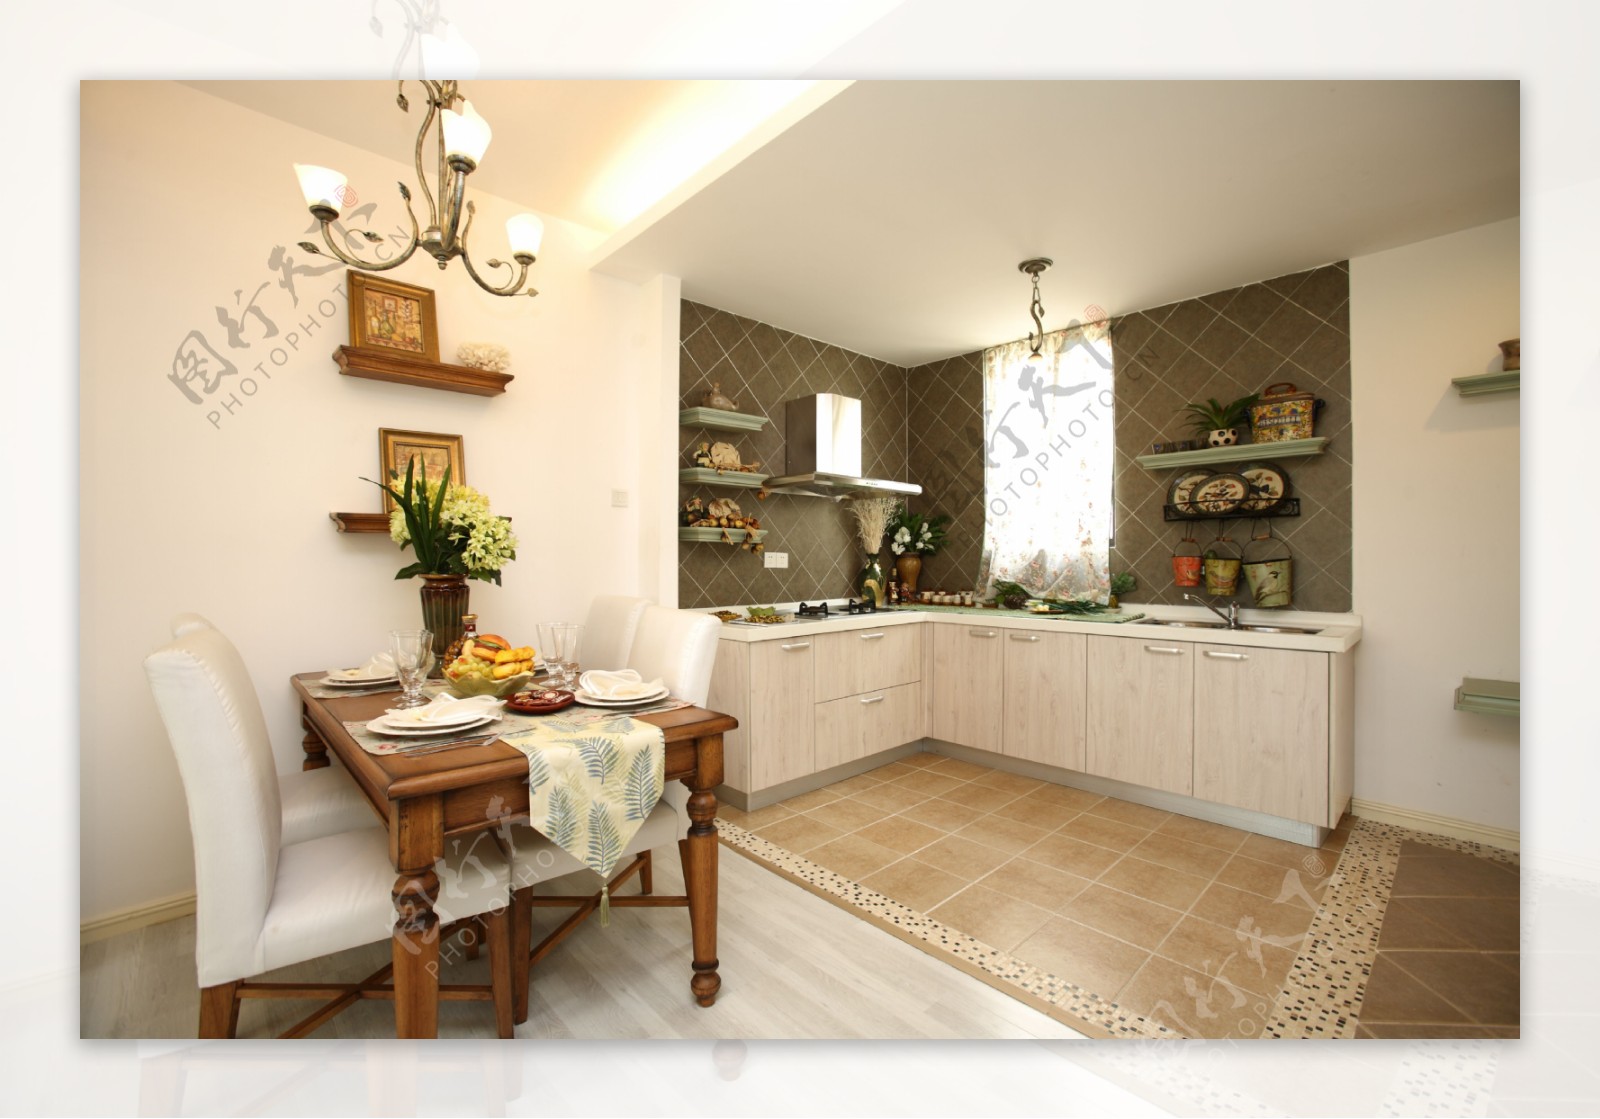 现代地中海风格厨房装修效果图图片素材-编号24703001-图行天下